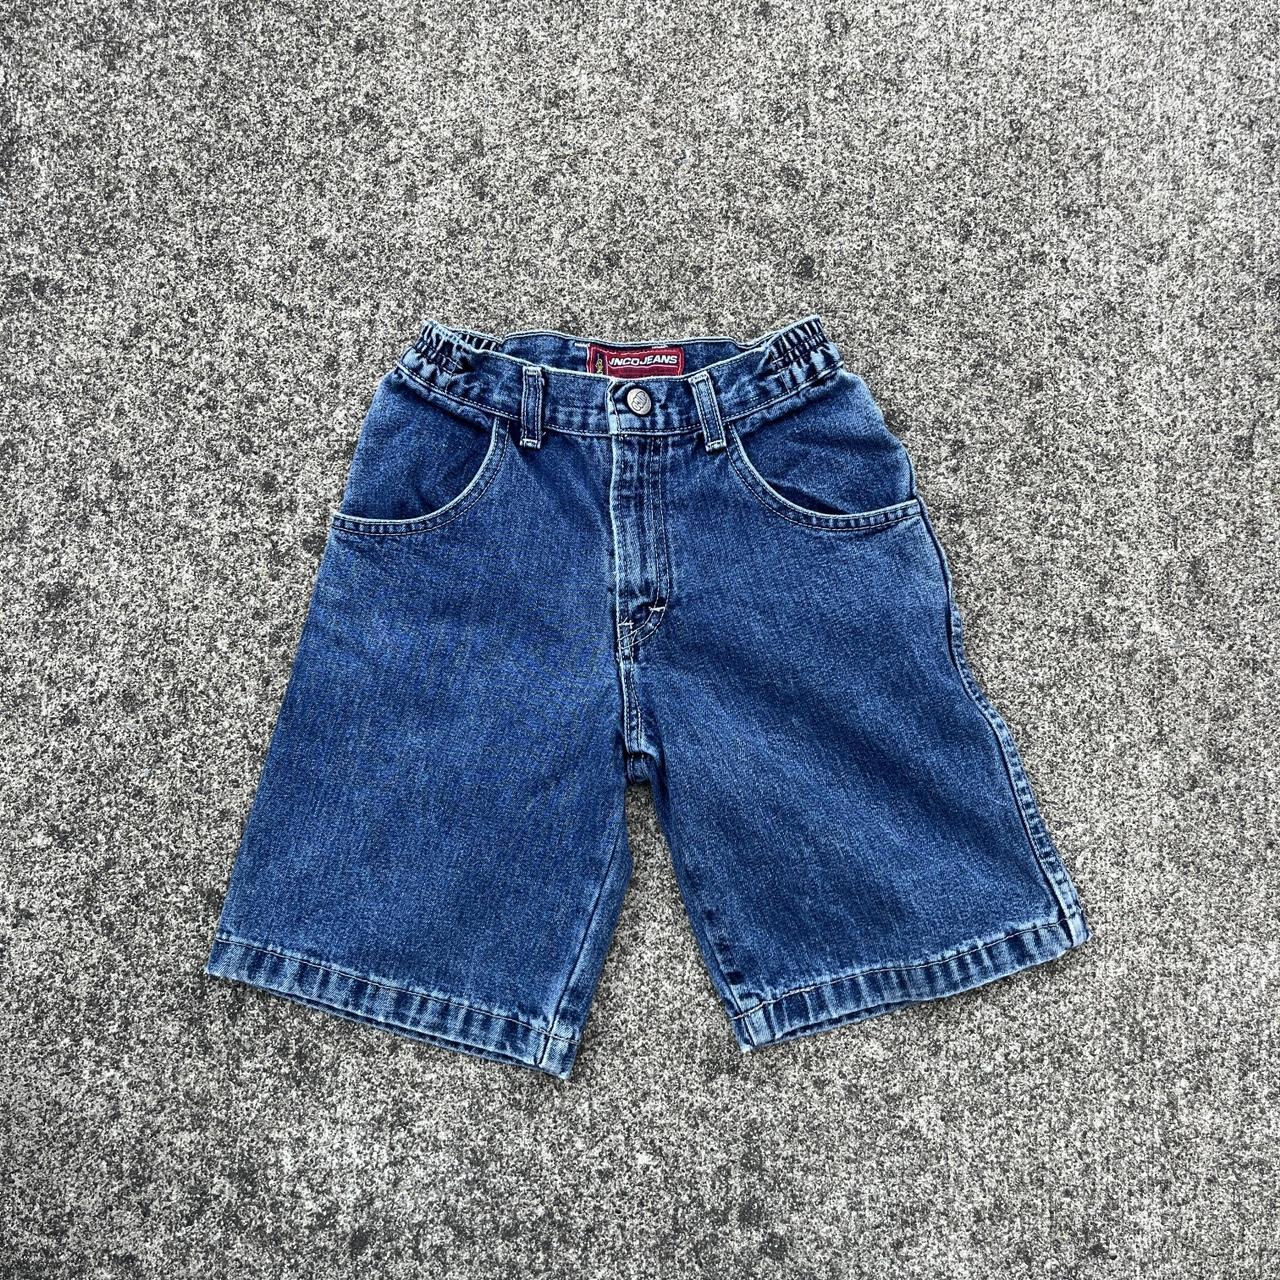 Kids JNCO jean shorts waist 20” inseam 8” leg... - Depop